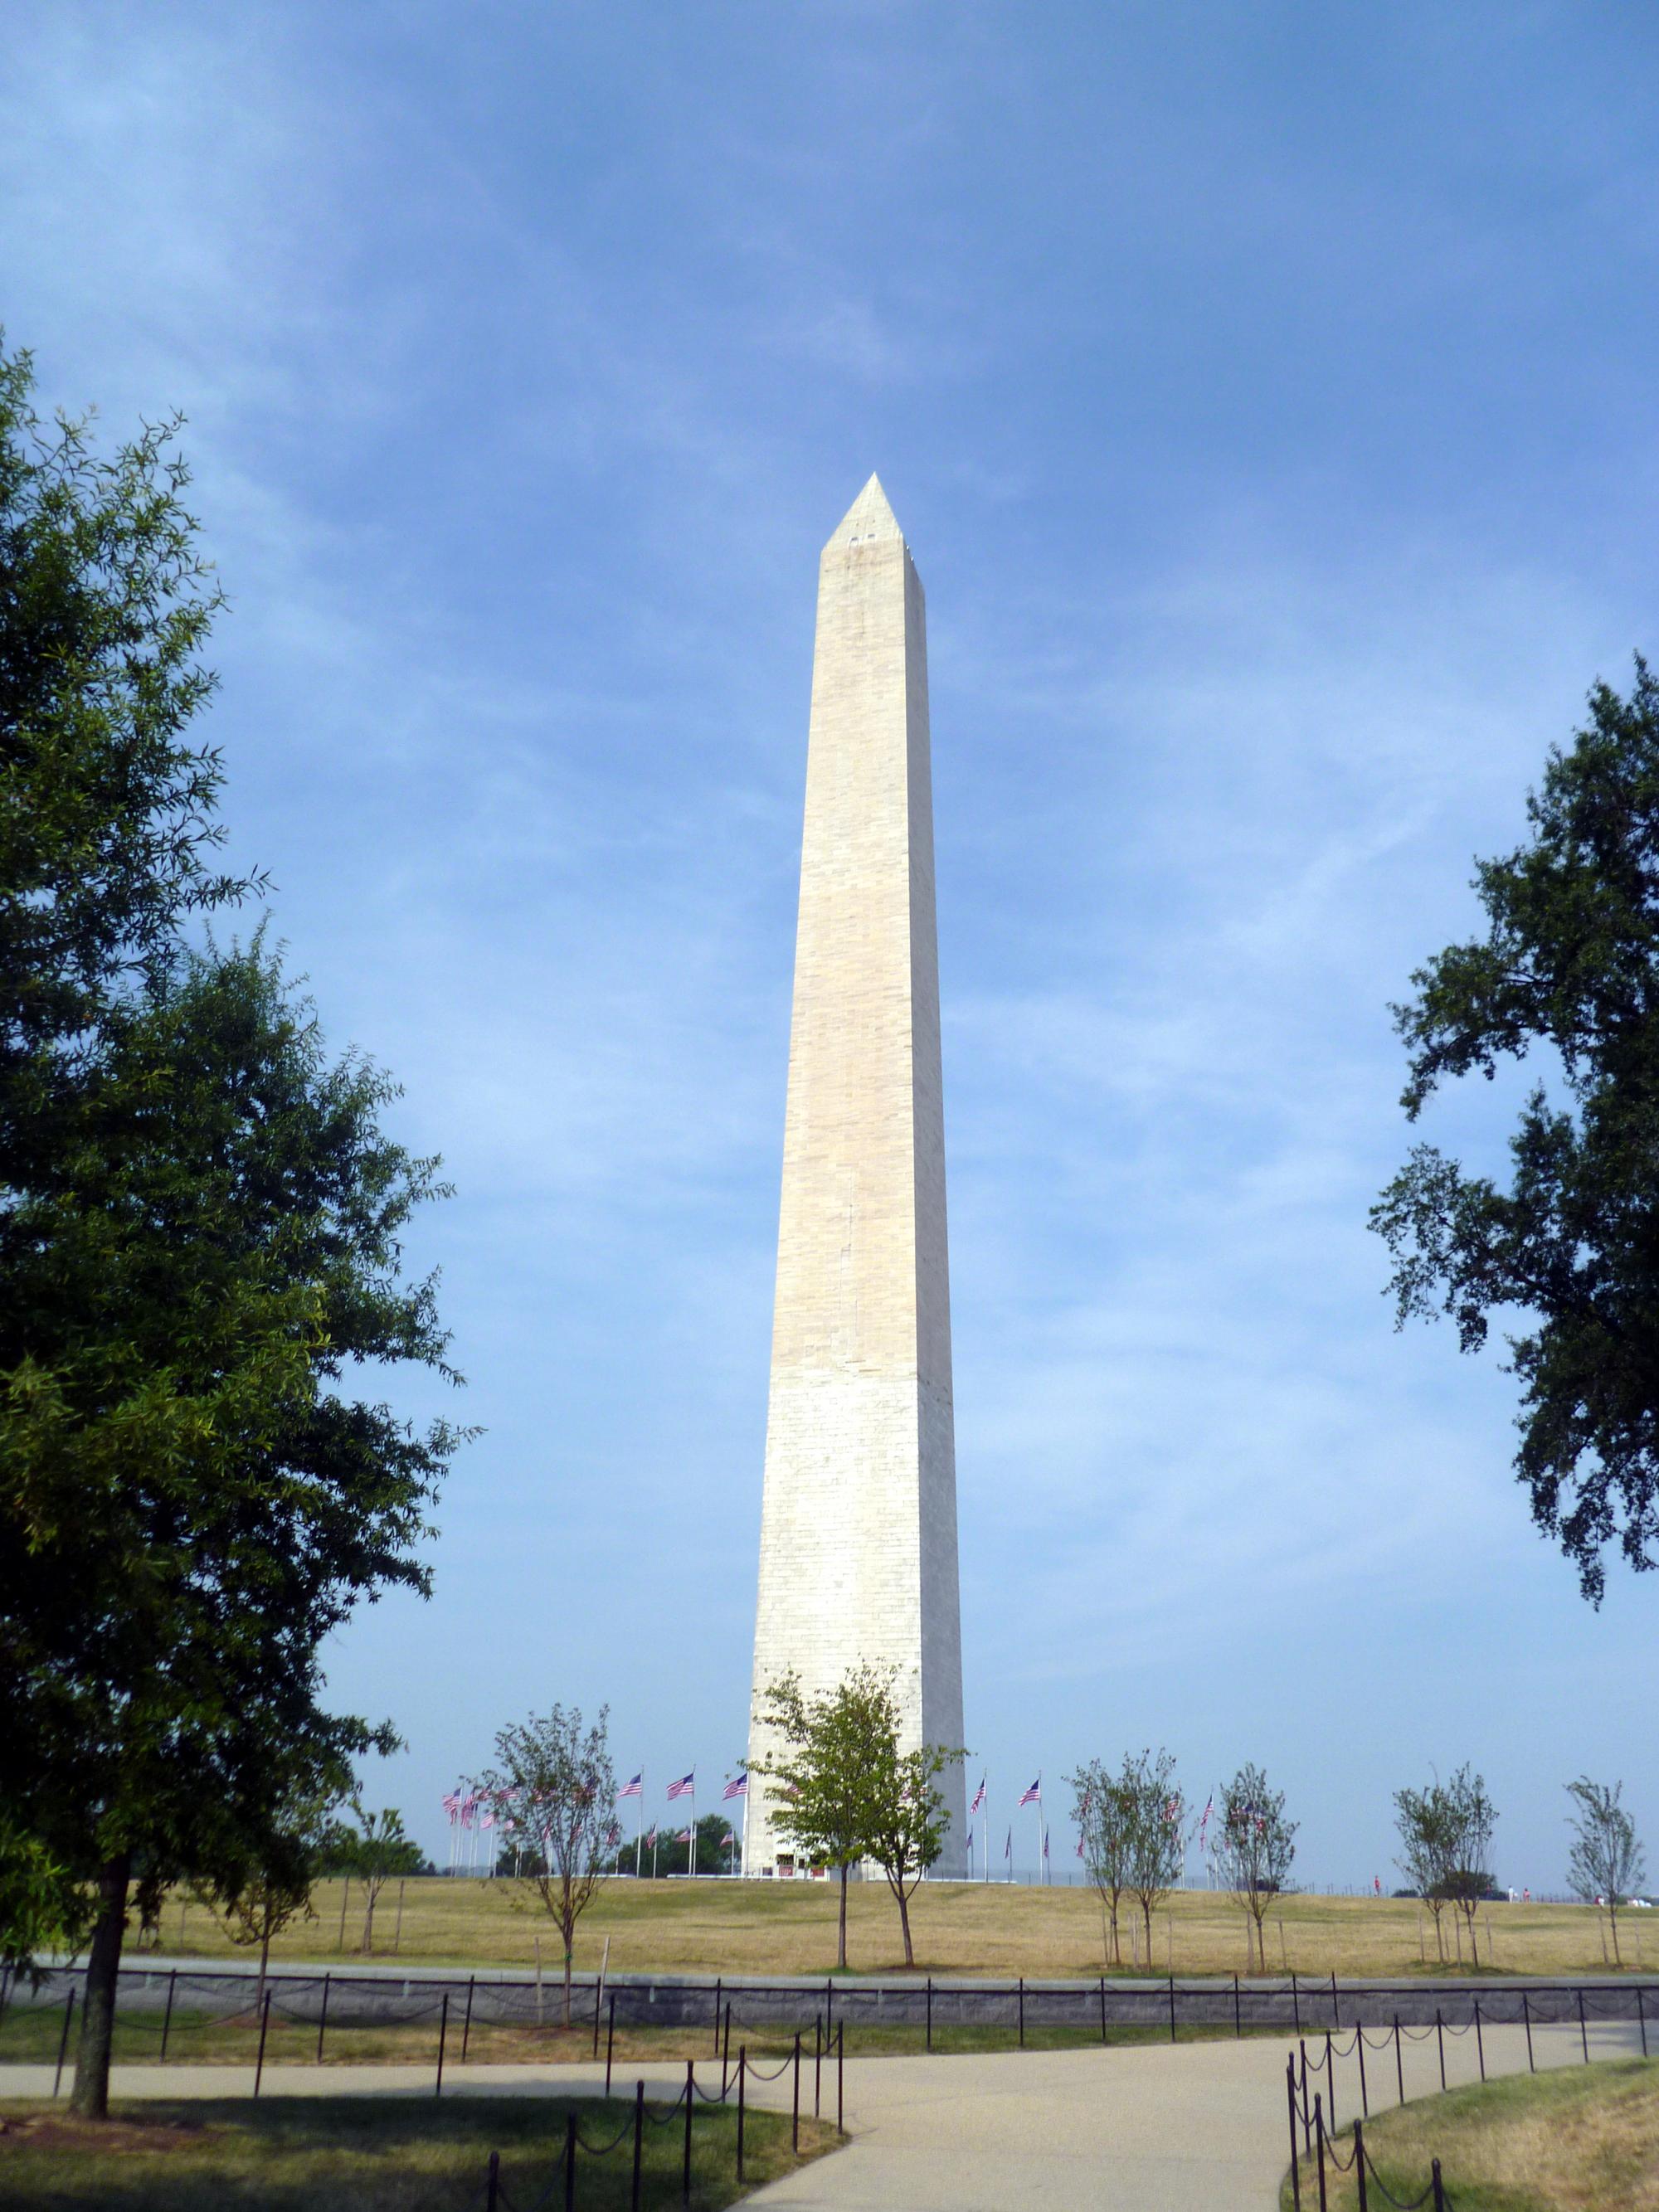 Washington D.C. - Washington Monument